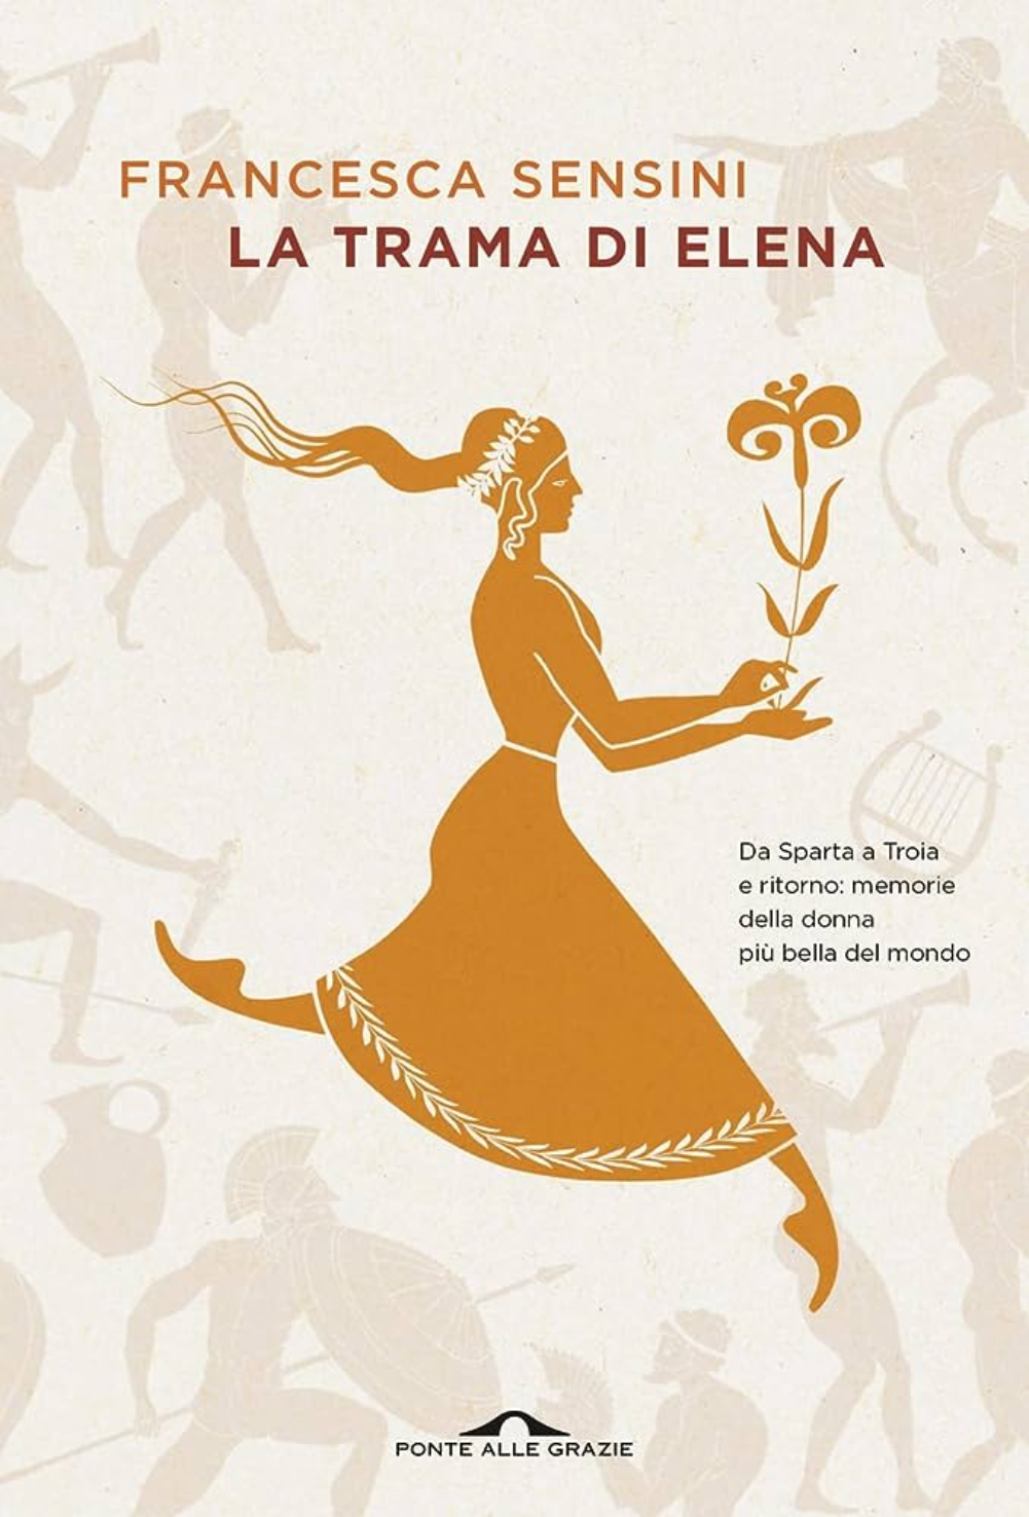 Copertina del libro la trama di elena di francesca sensini, con silouette di donna graca su sfondo neutro